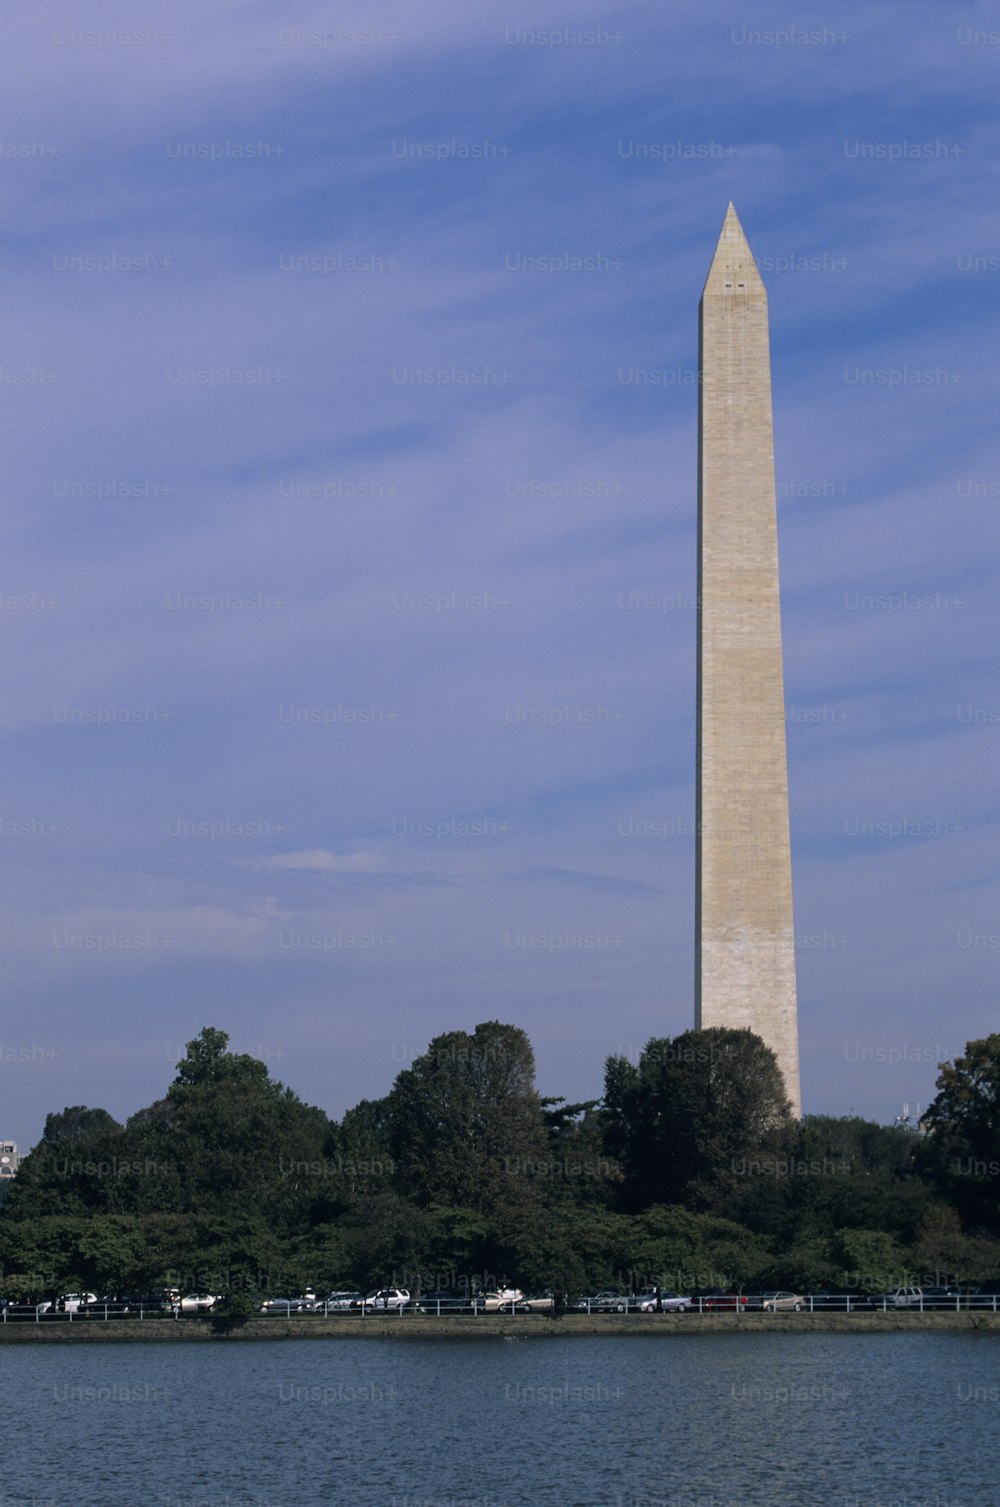 Das Washington Monument in Washington, DC ist von der anderen Seite des Wassers aus zu sehen